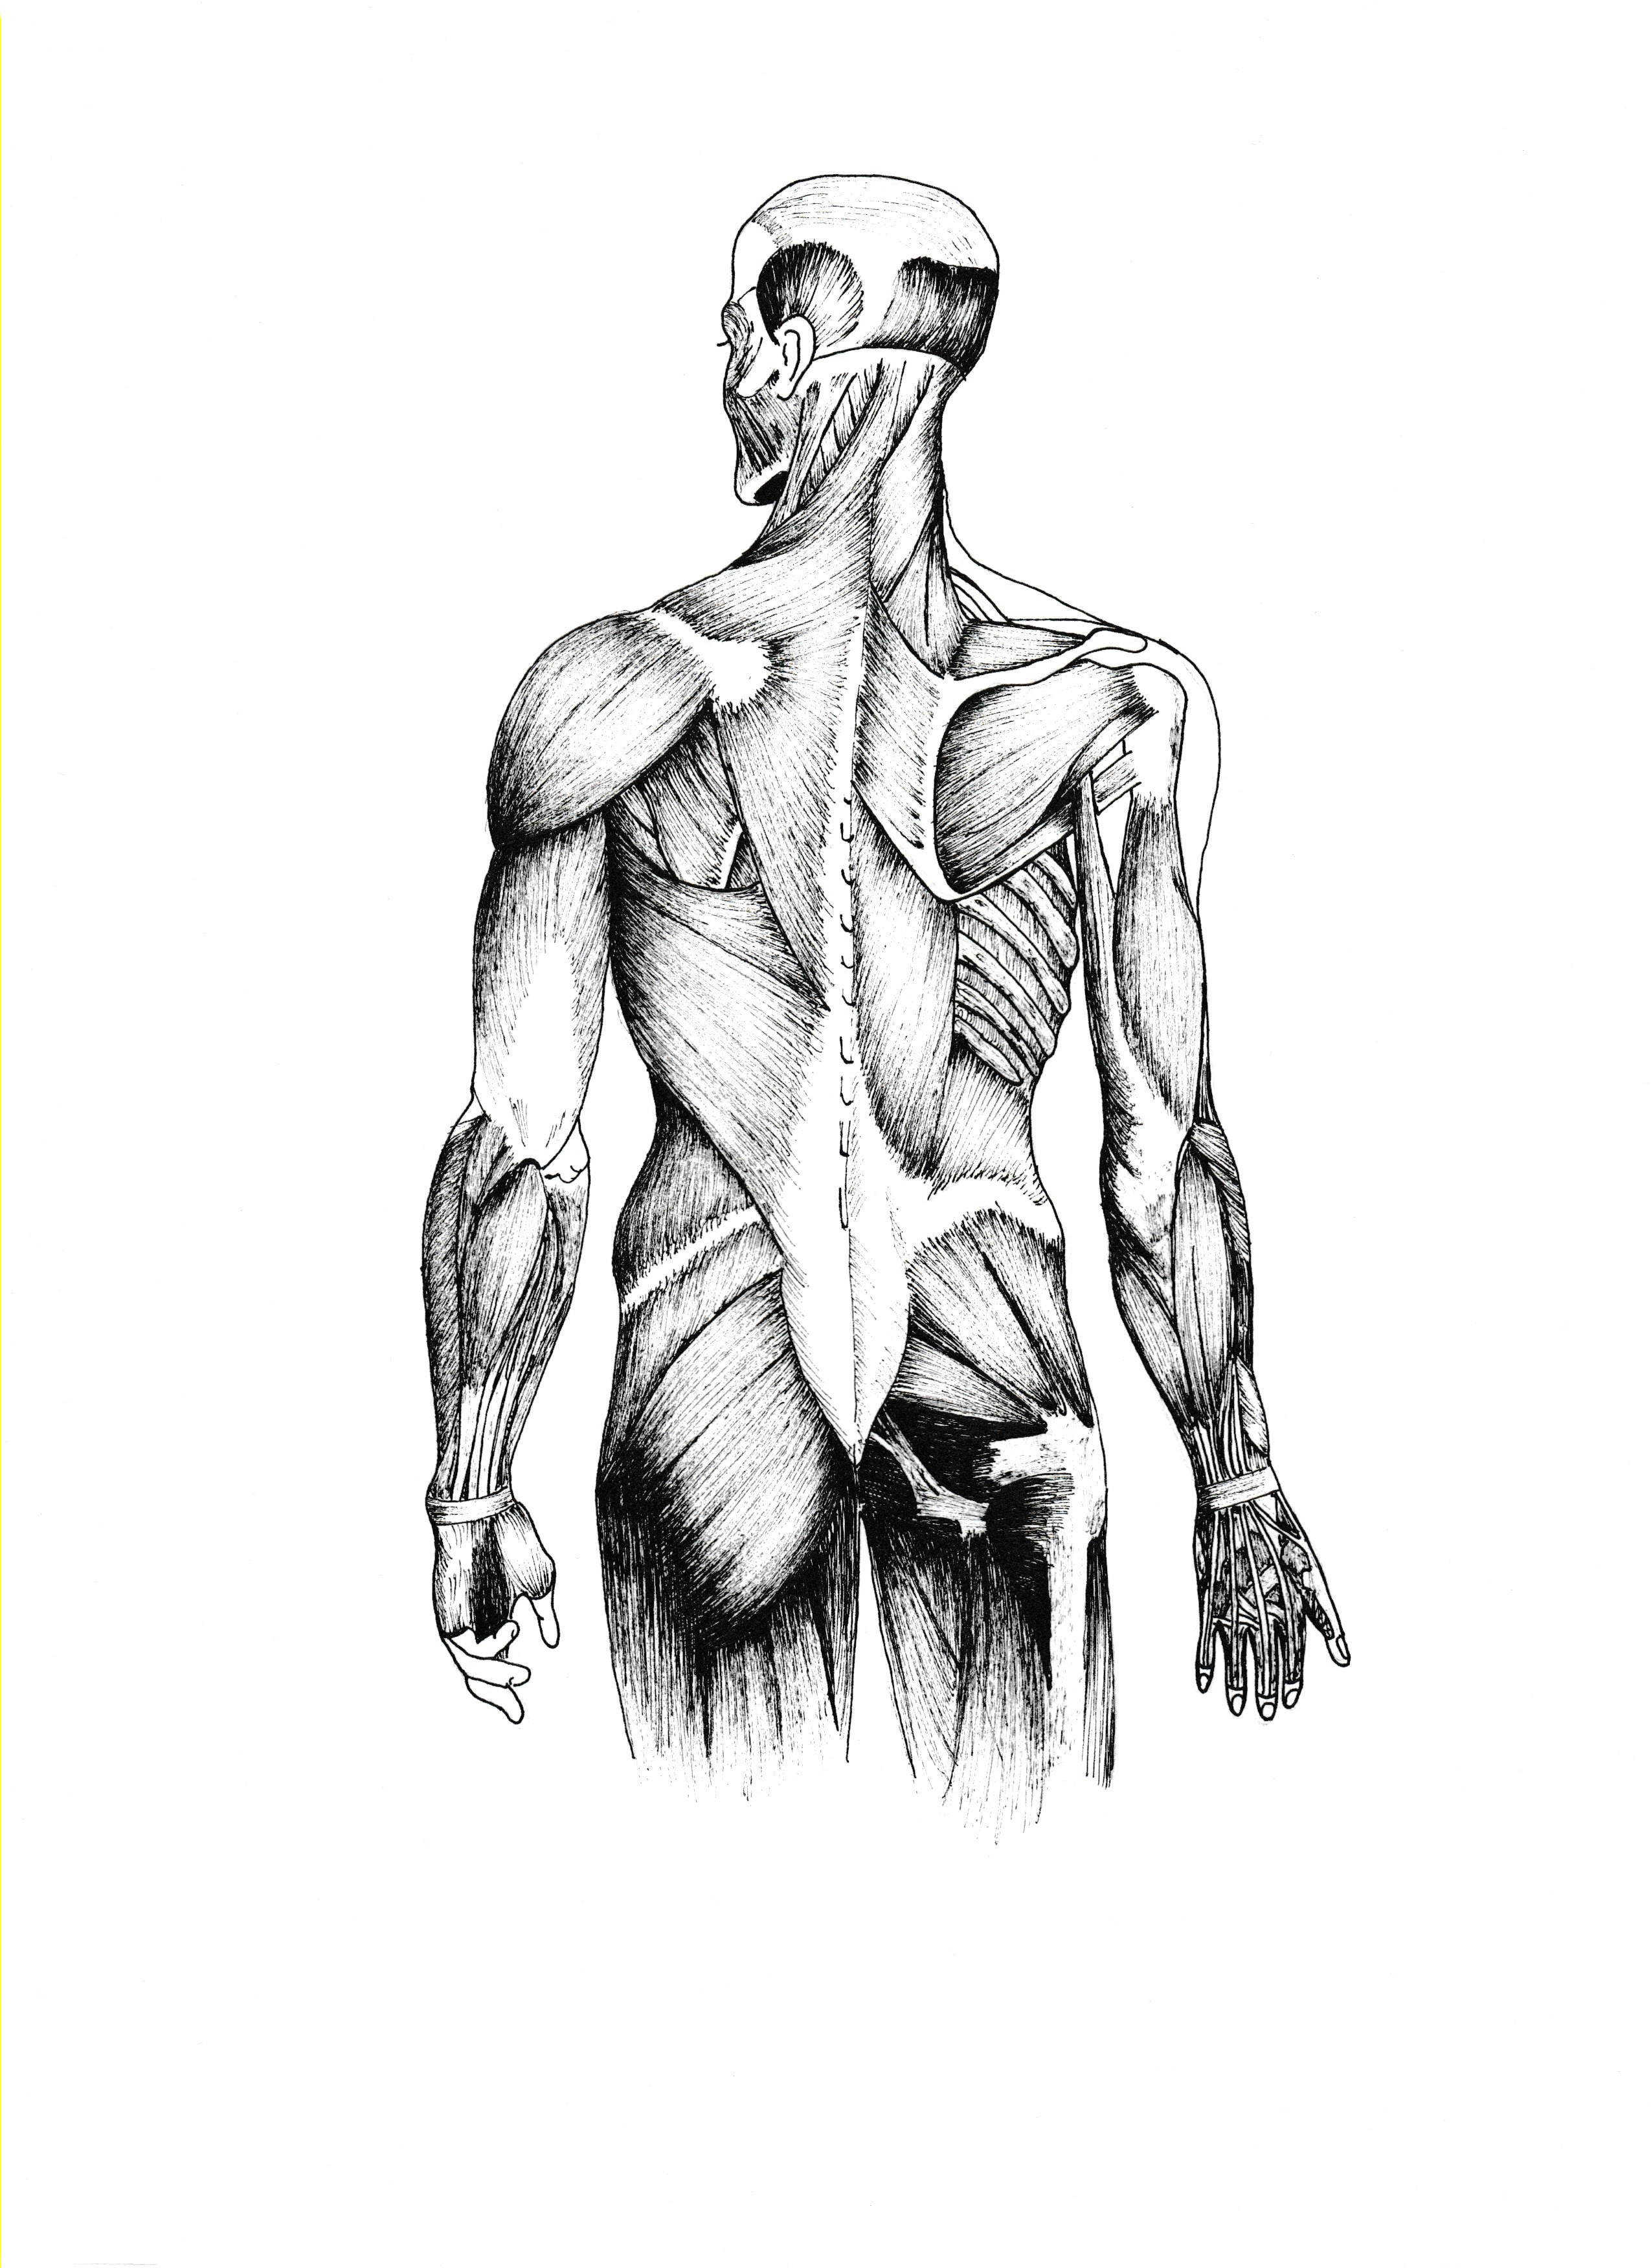 Anatomy study, ink on A4.